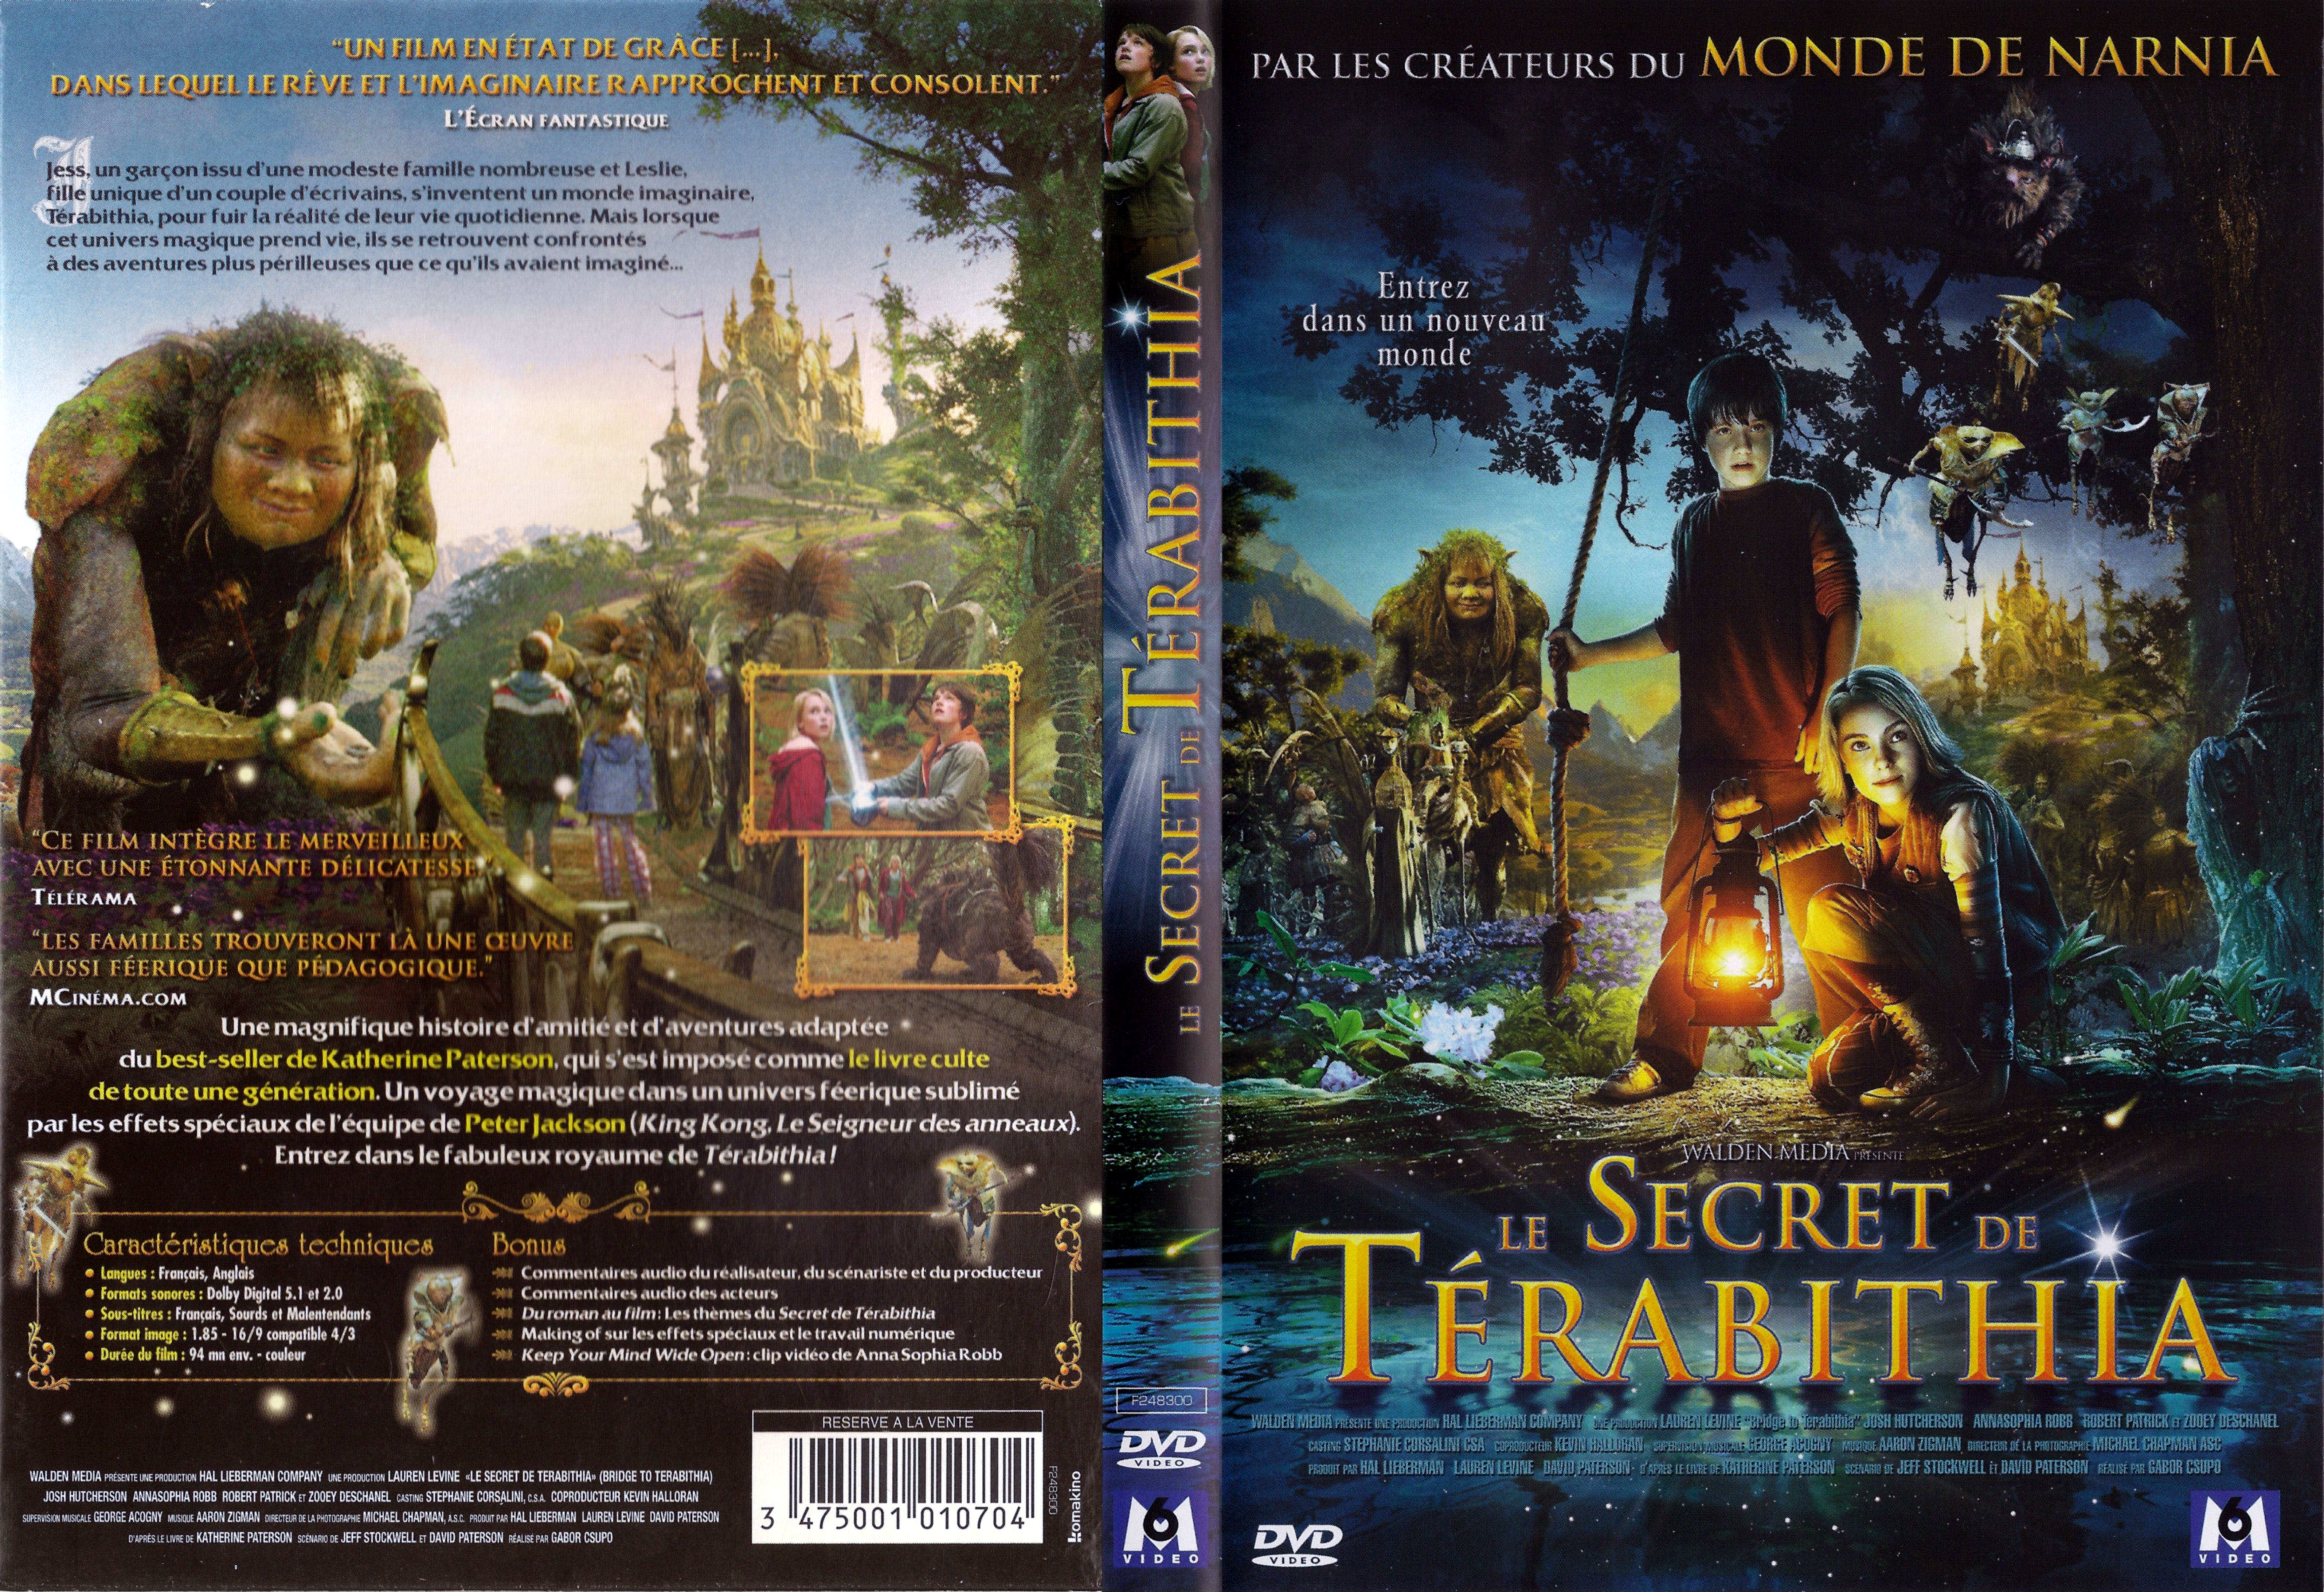 Jaquette DVD Le secret de terabithia